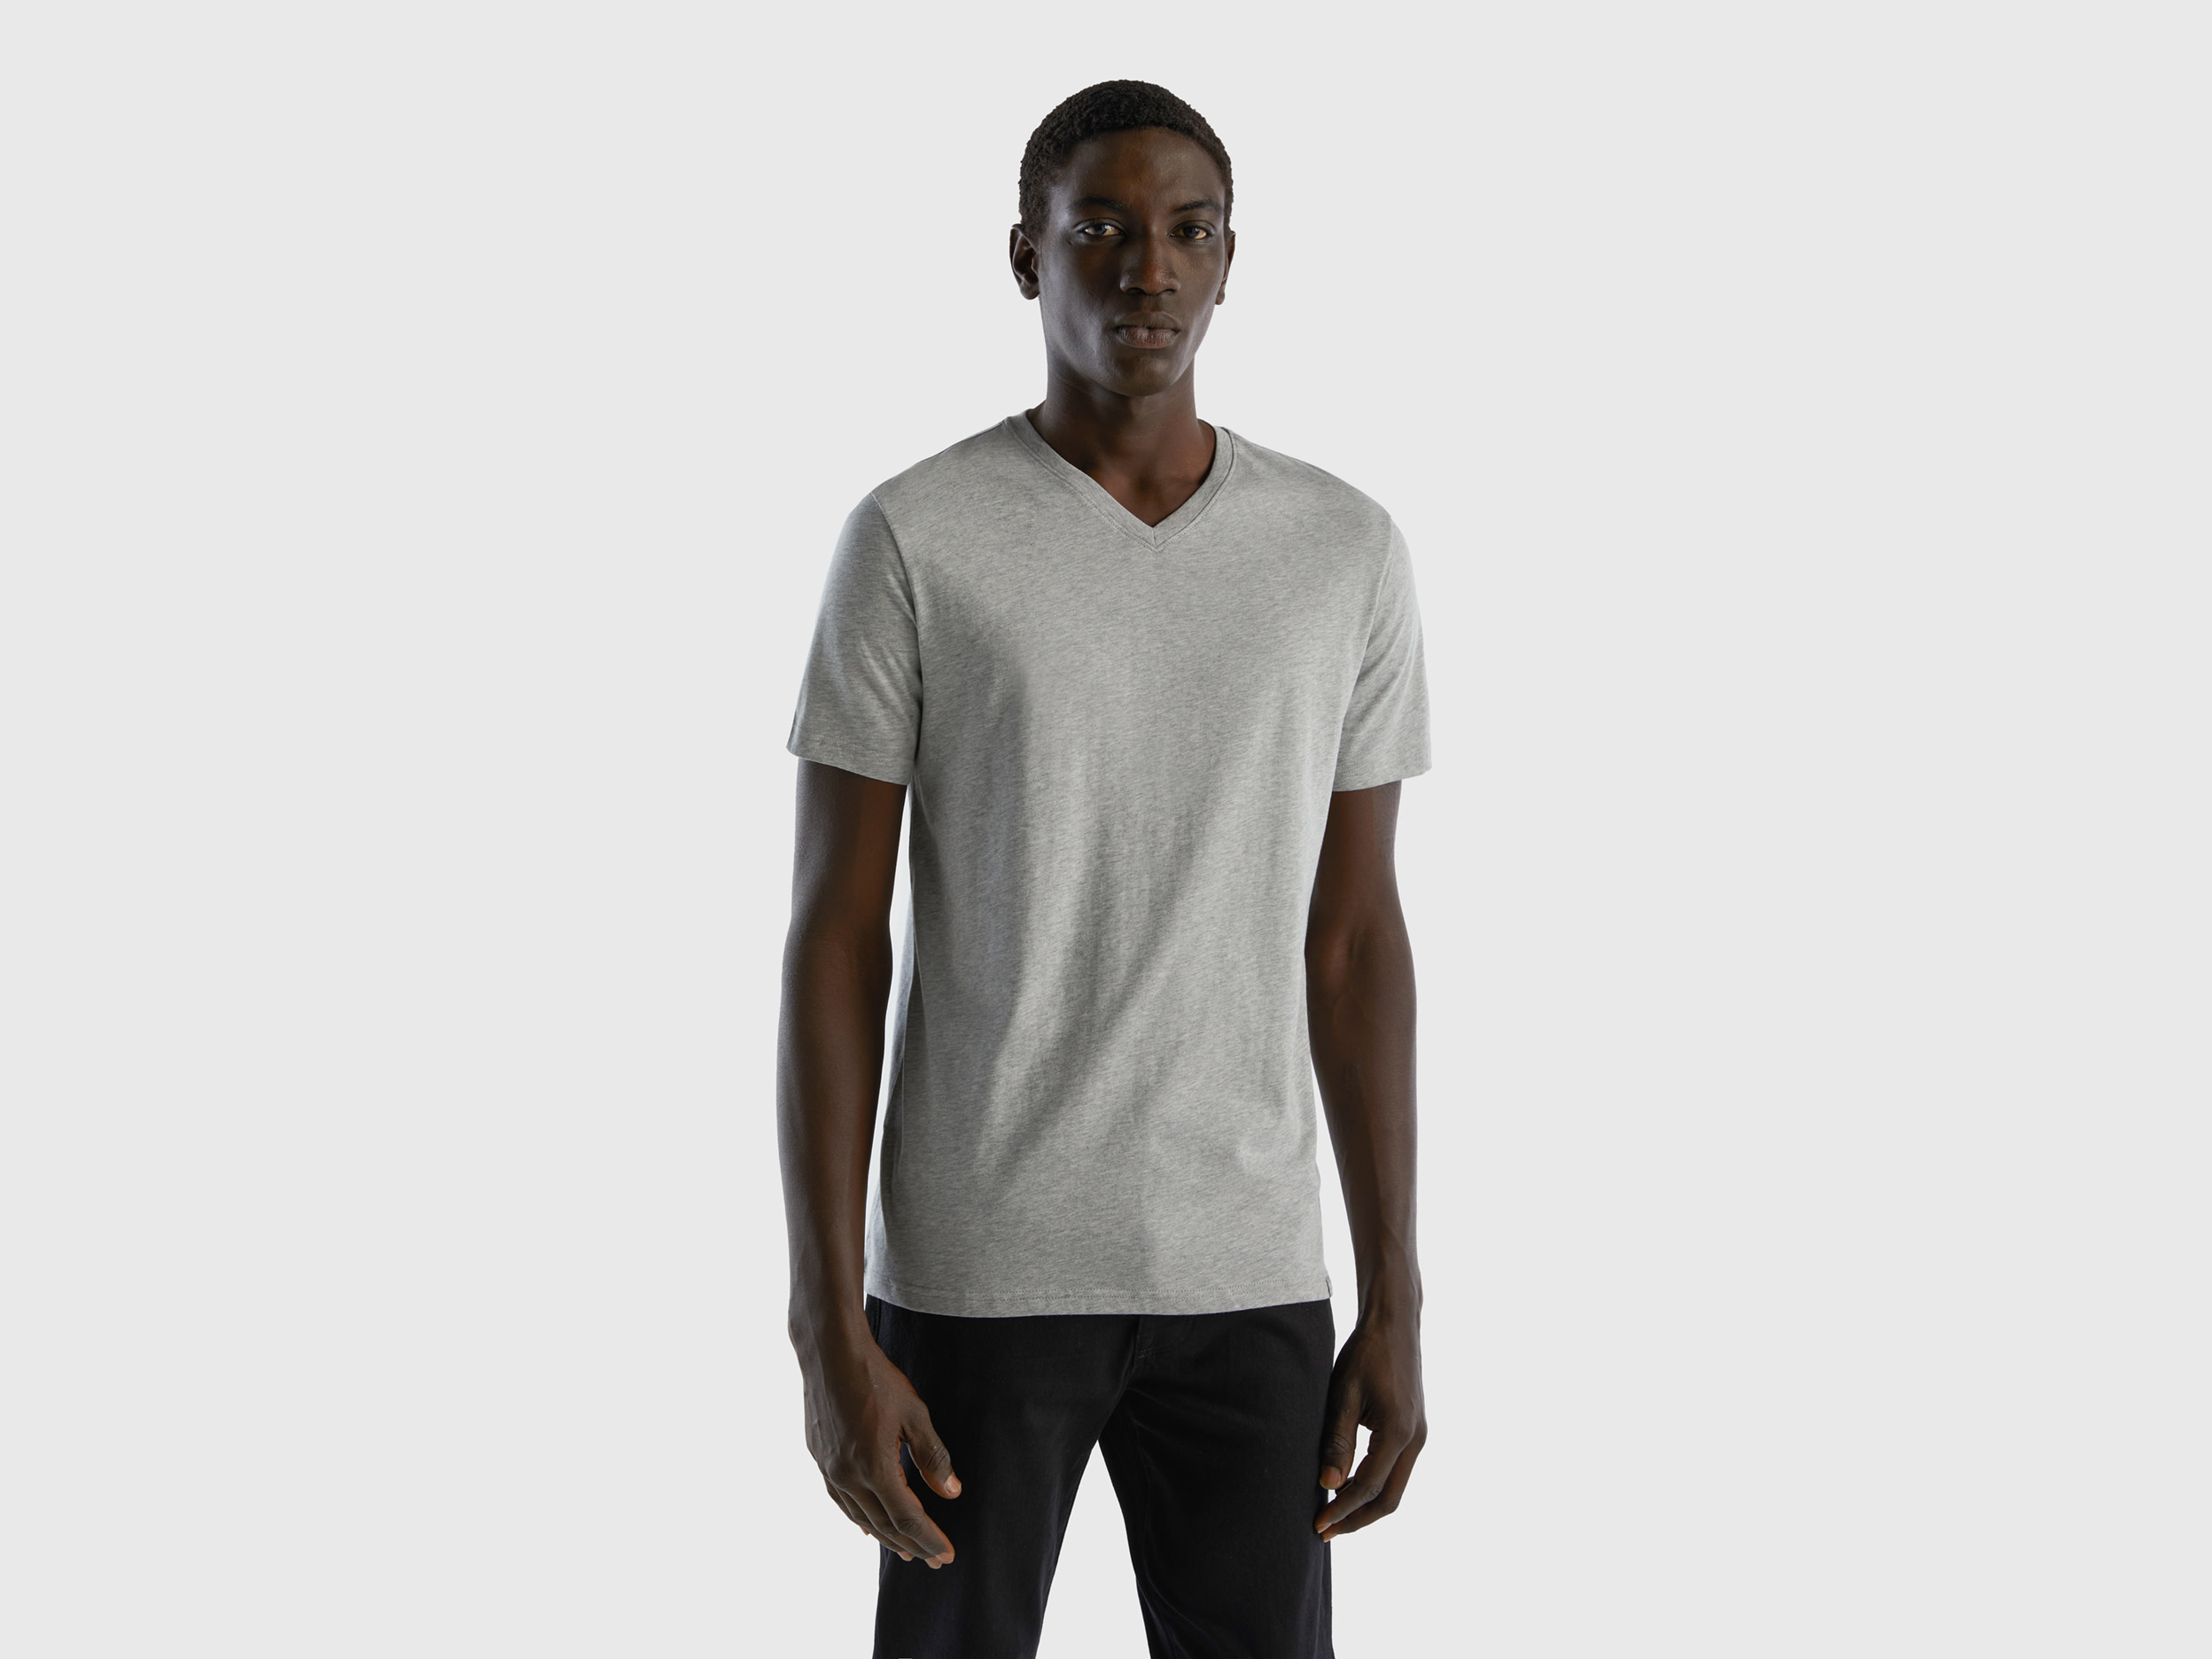 Benetton, T-shirt In Long Fiber Cotton, size XXXL, Light Gray, Men